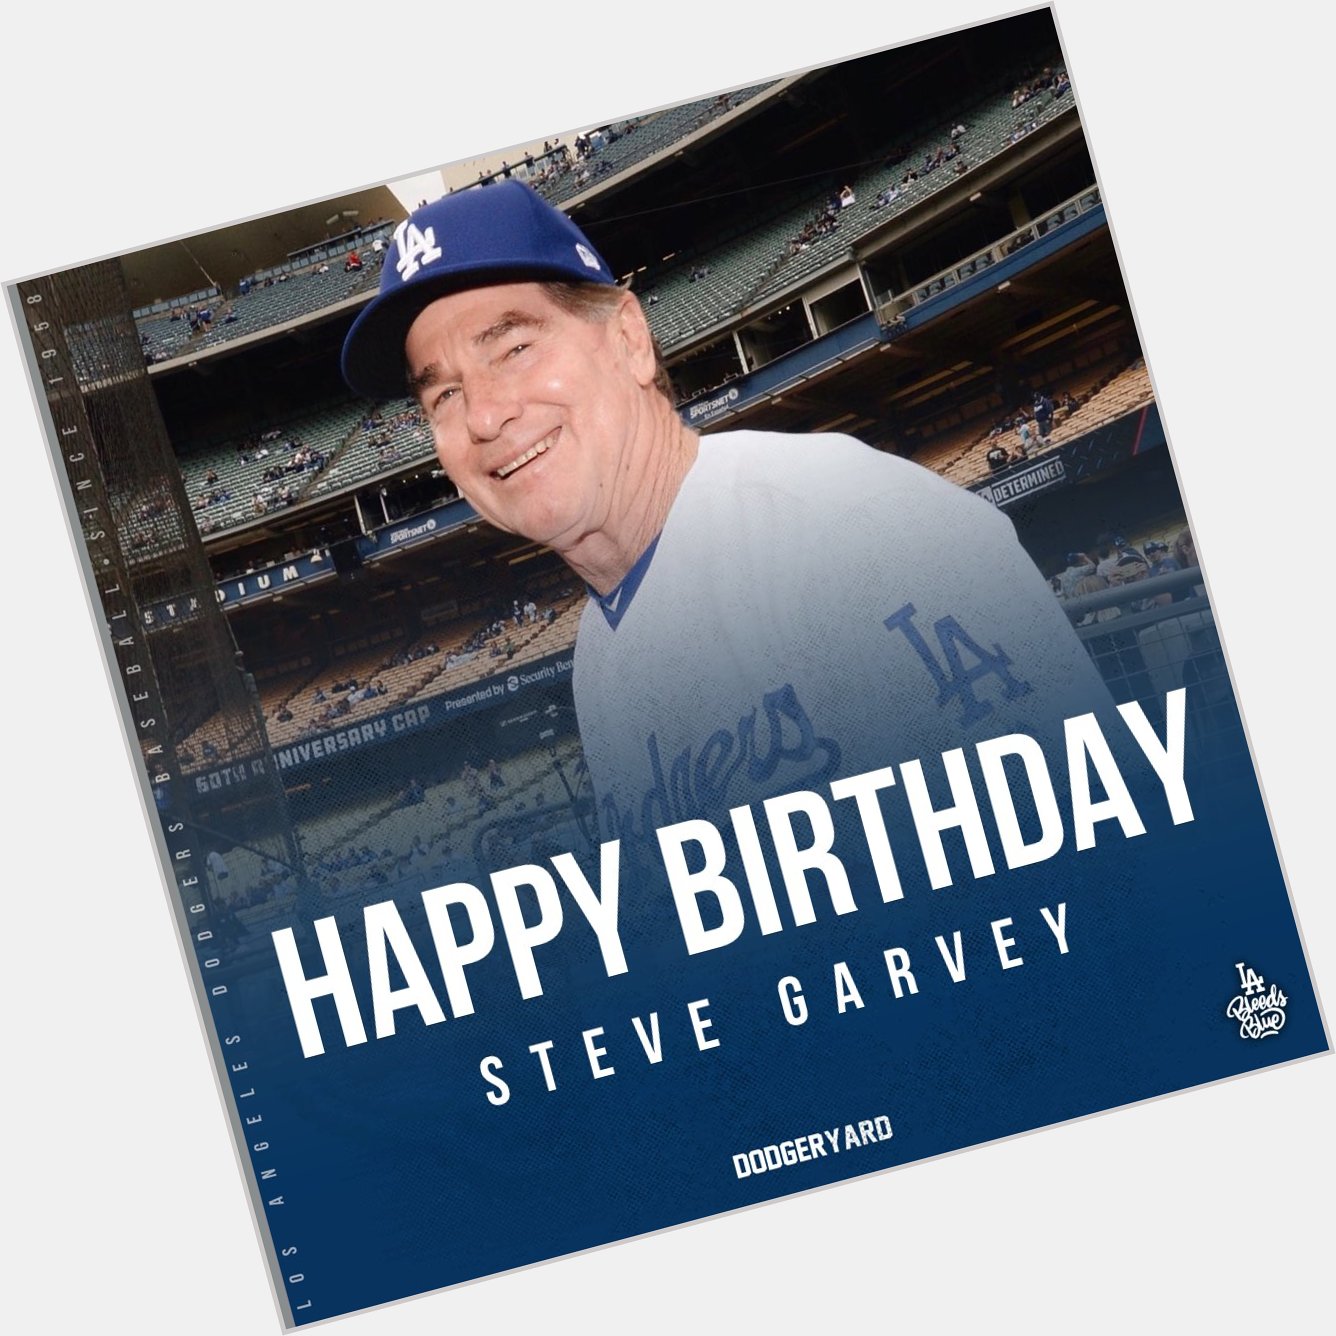 Happy birthday, Steve Garvey! 